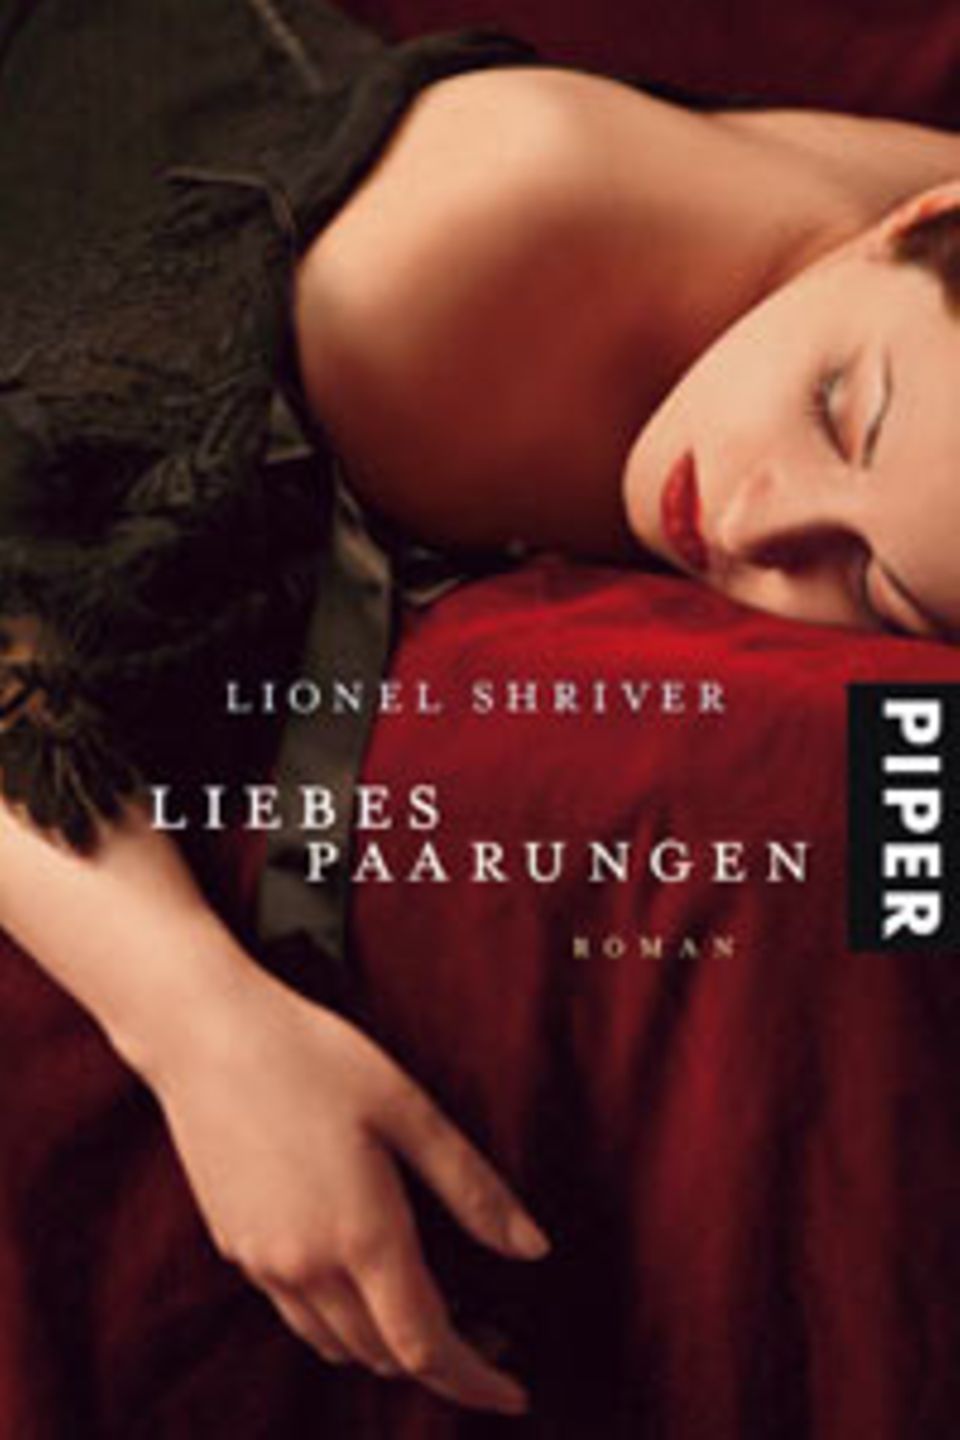 Lionel Shriver: "Liebespaarungen"